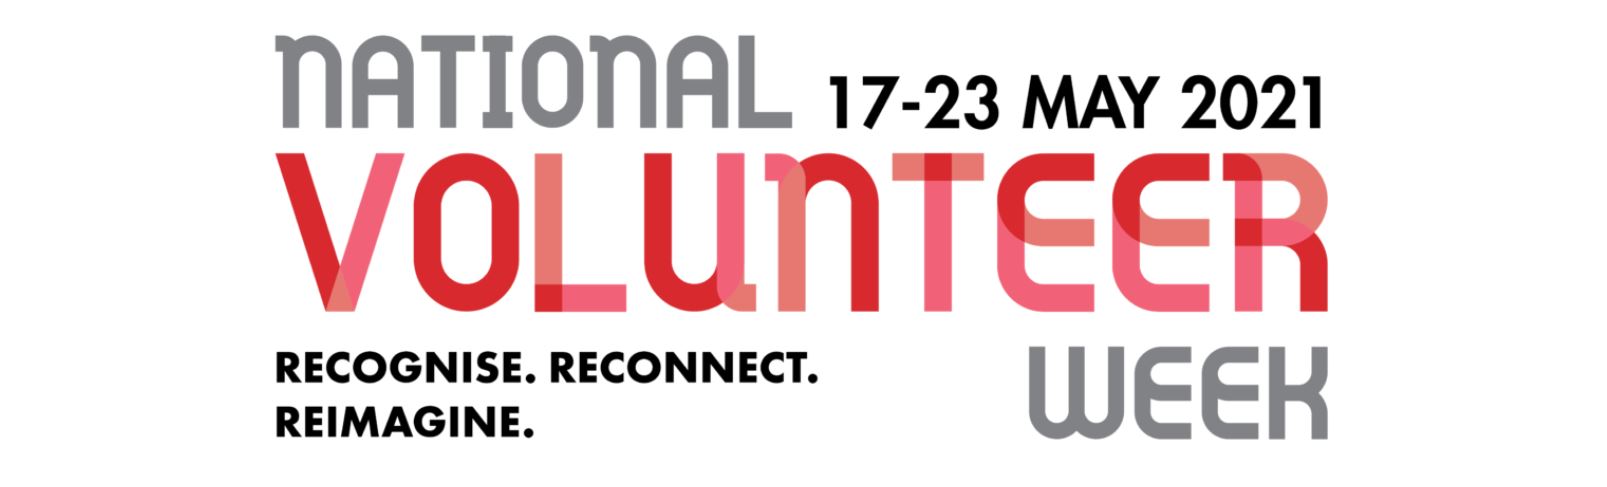 OPA volunteers recognised during National Volunteer Week 2021